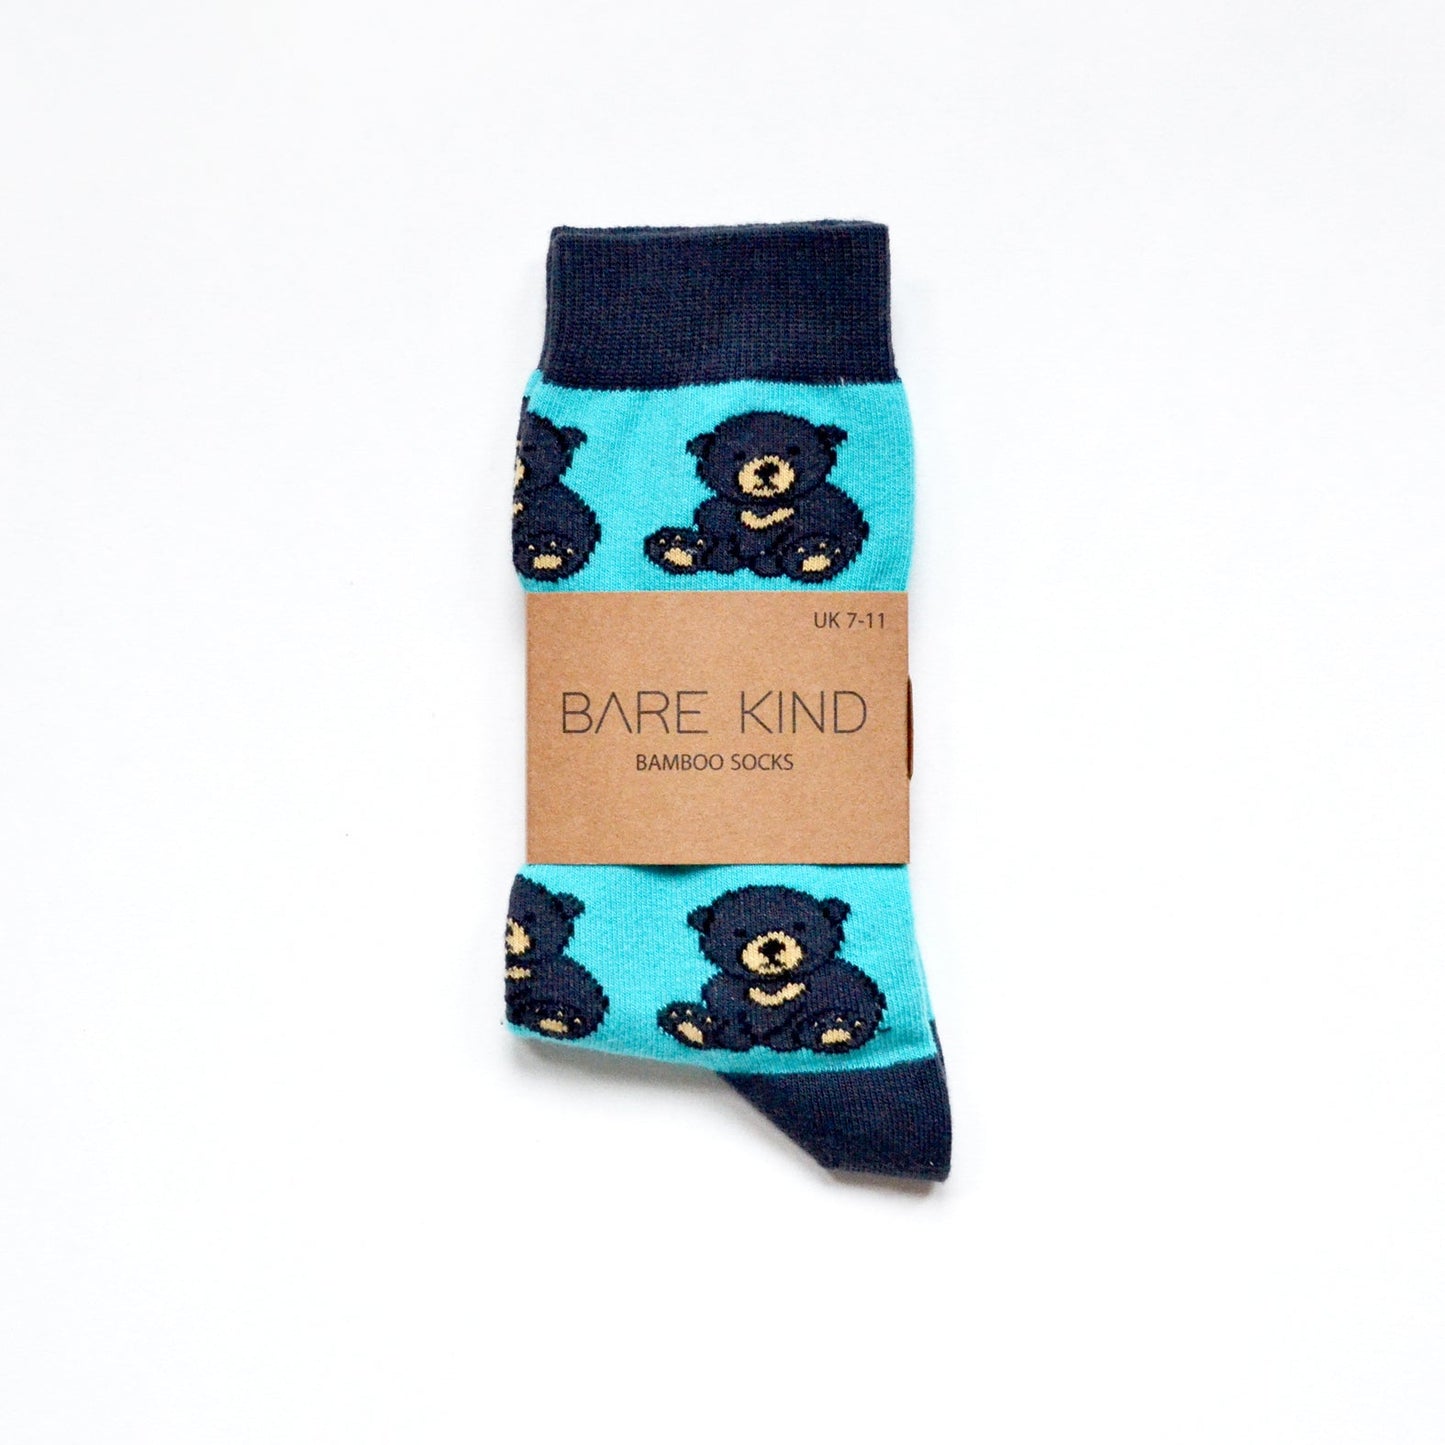 Bare Kind Bamboo Socks - Save the Sun Bears